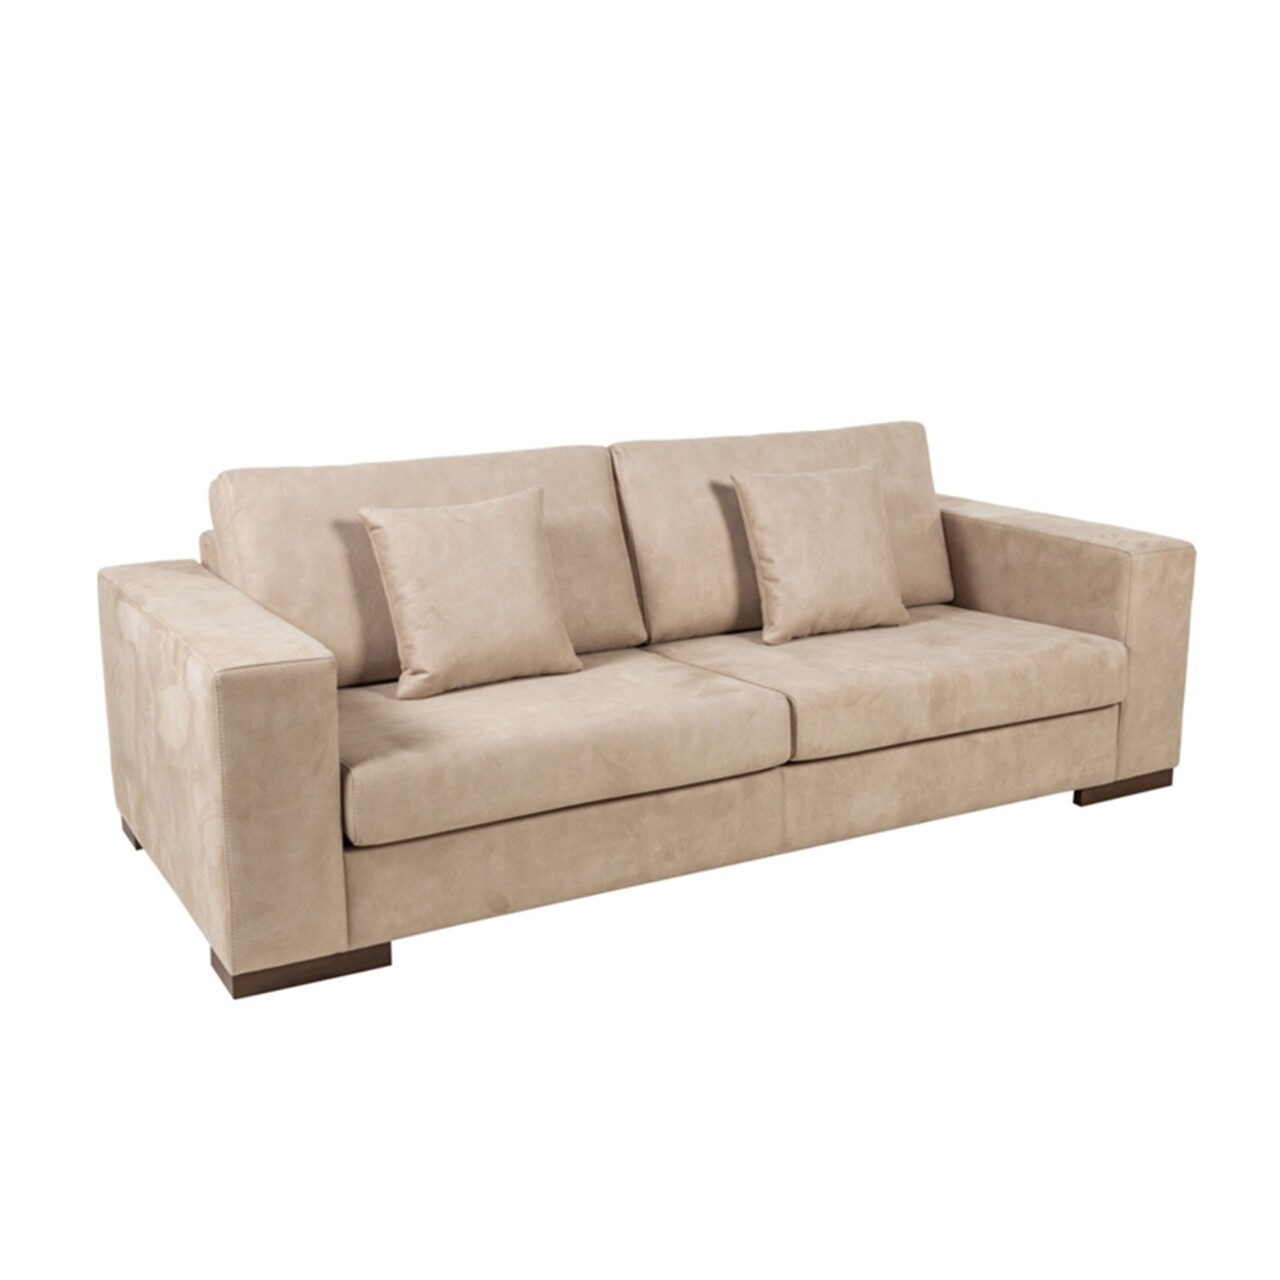 Newplus kihúzható kanapé, ndesign, 3 személyes, 220x95x85 cm, fa, krémszín